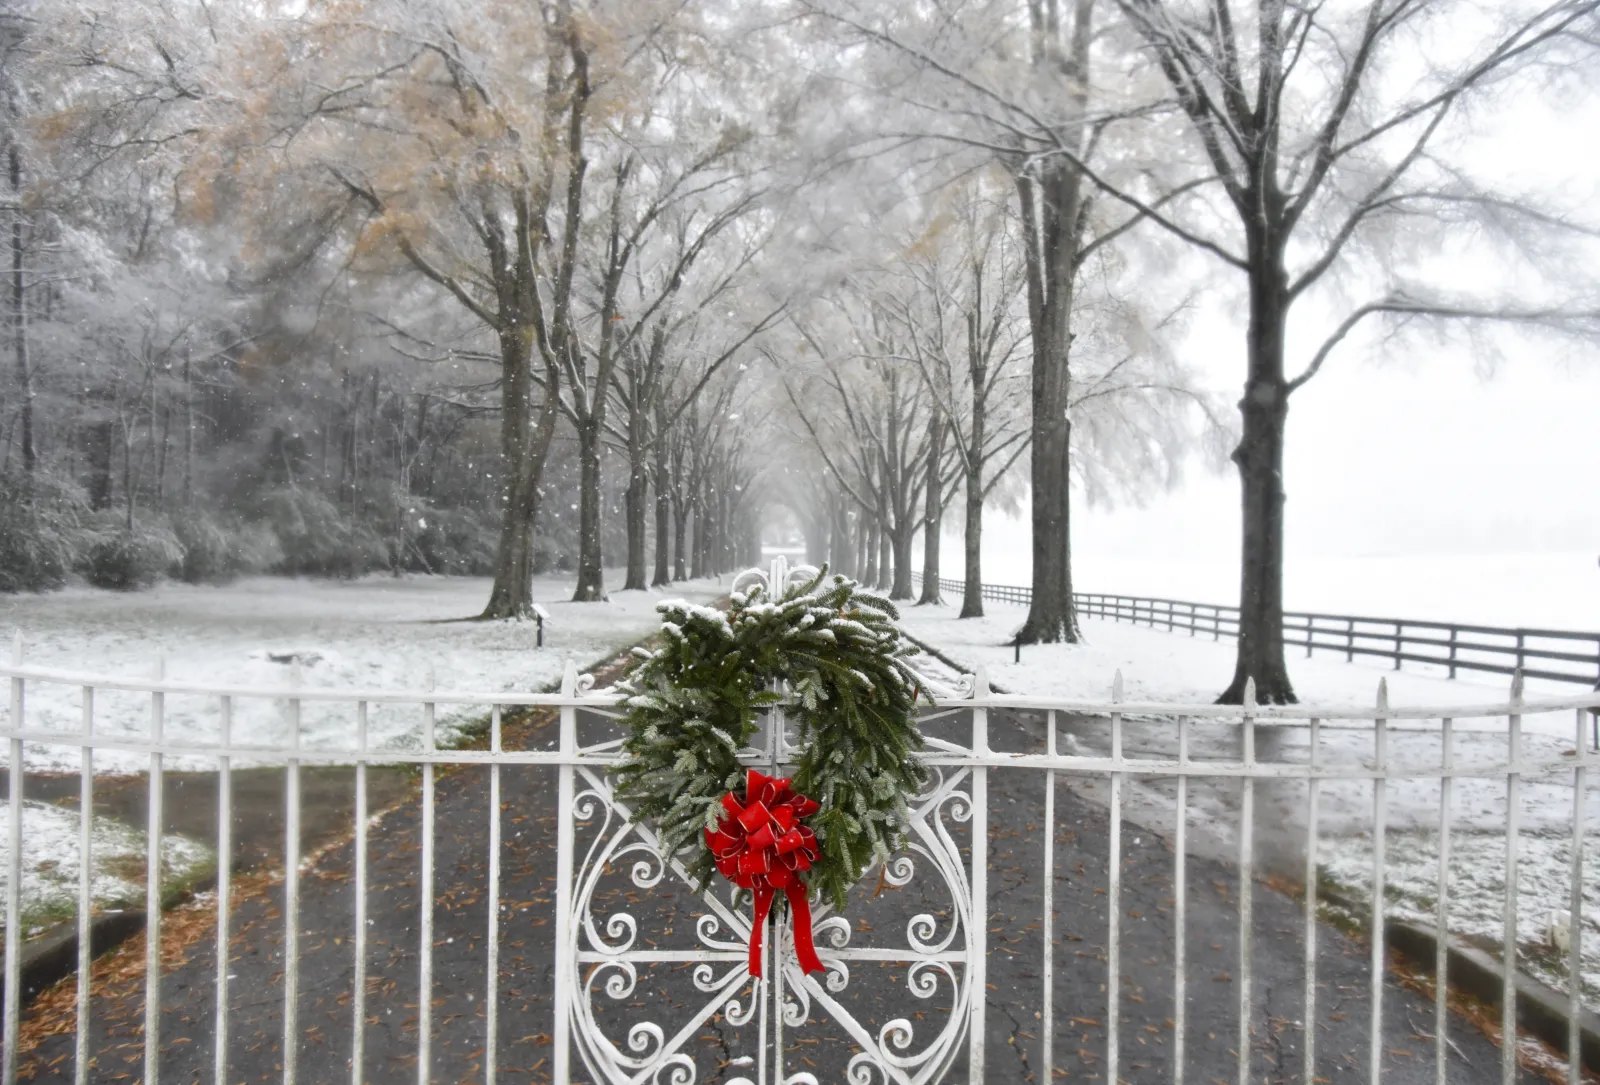 a wreath on a fence